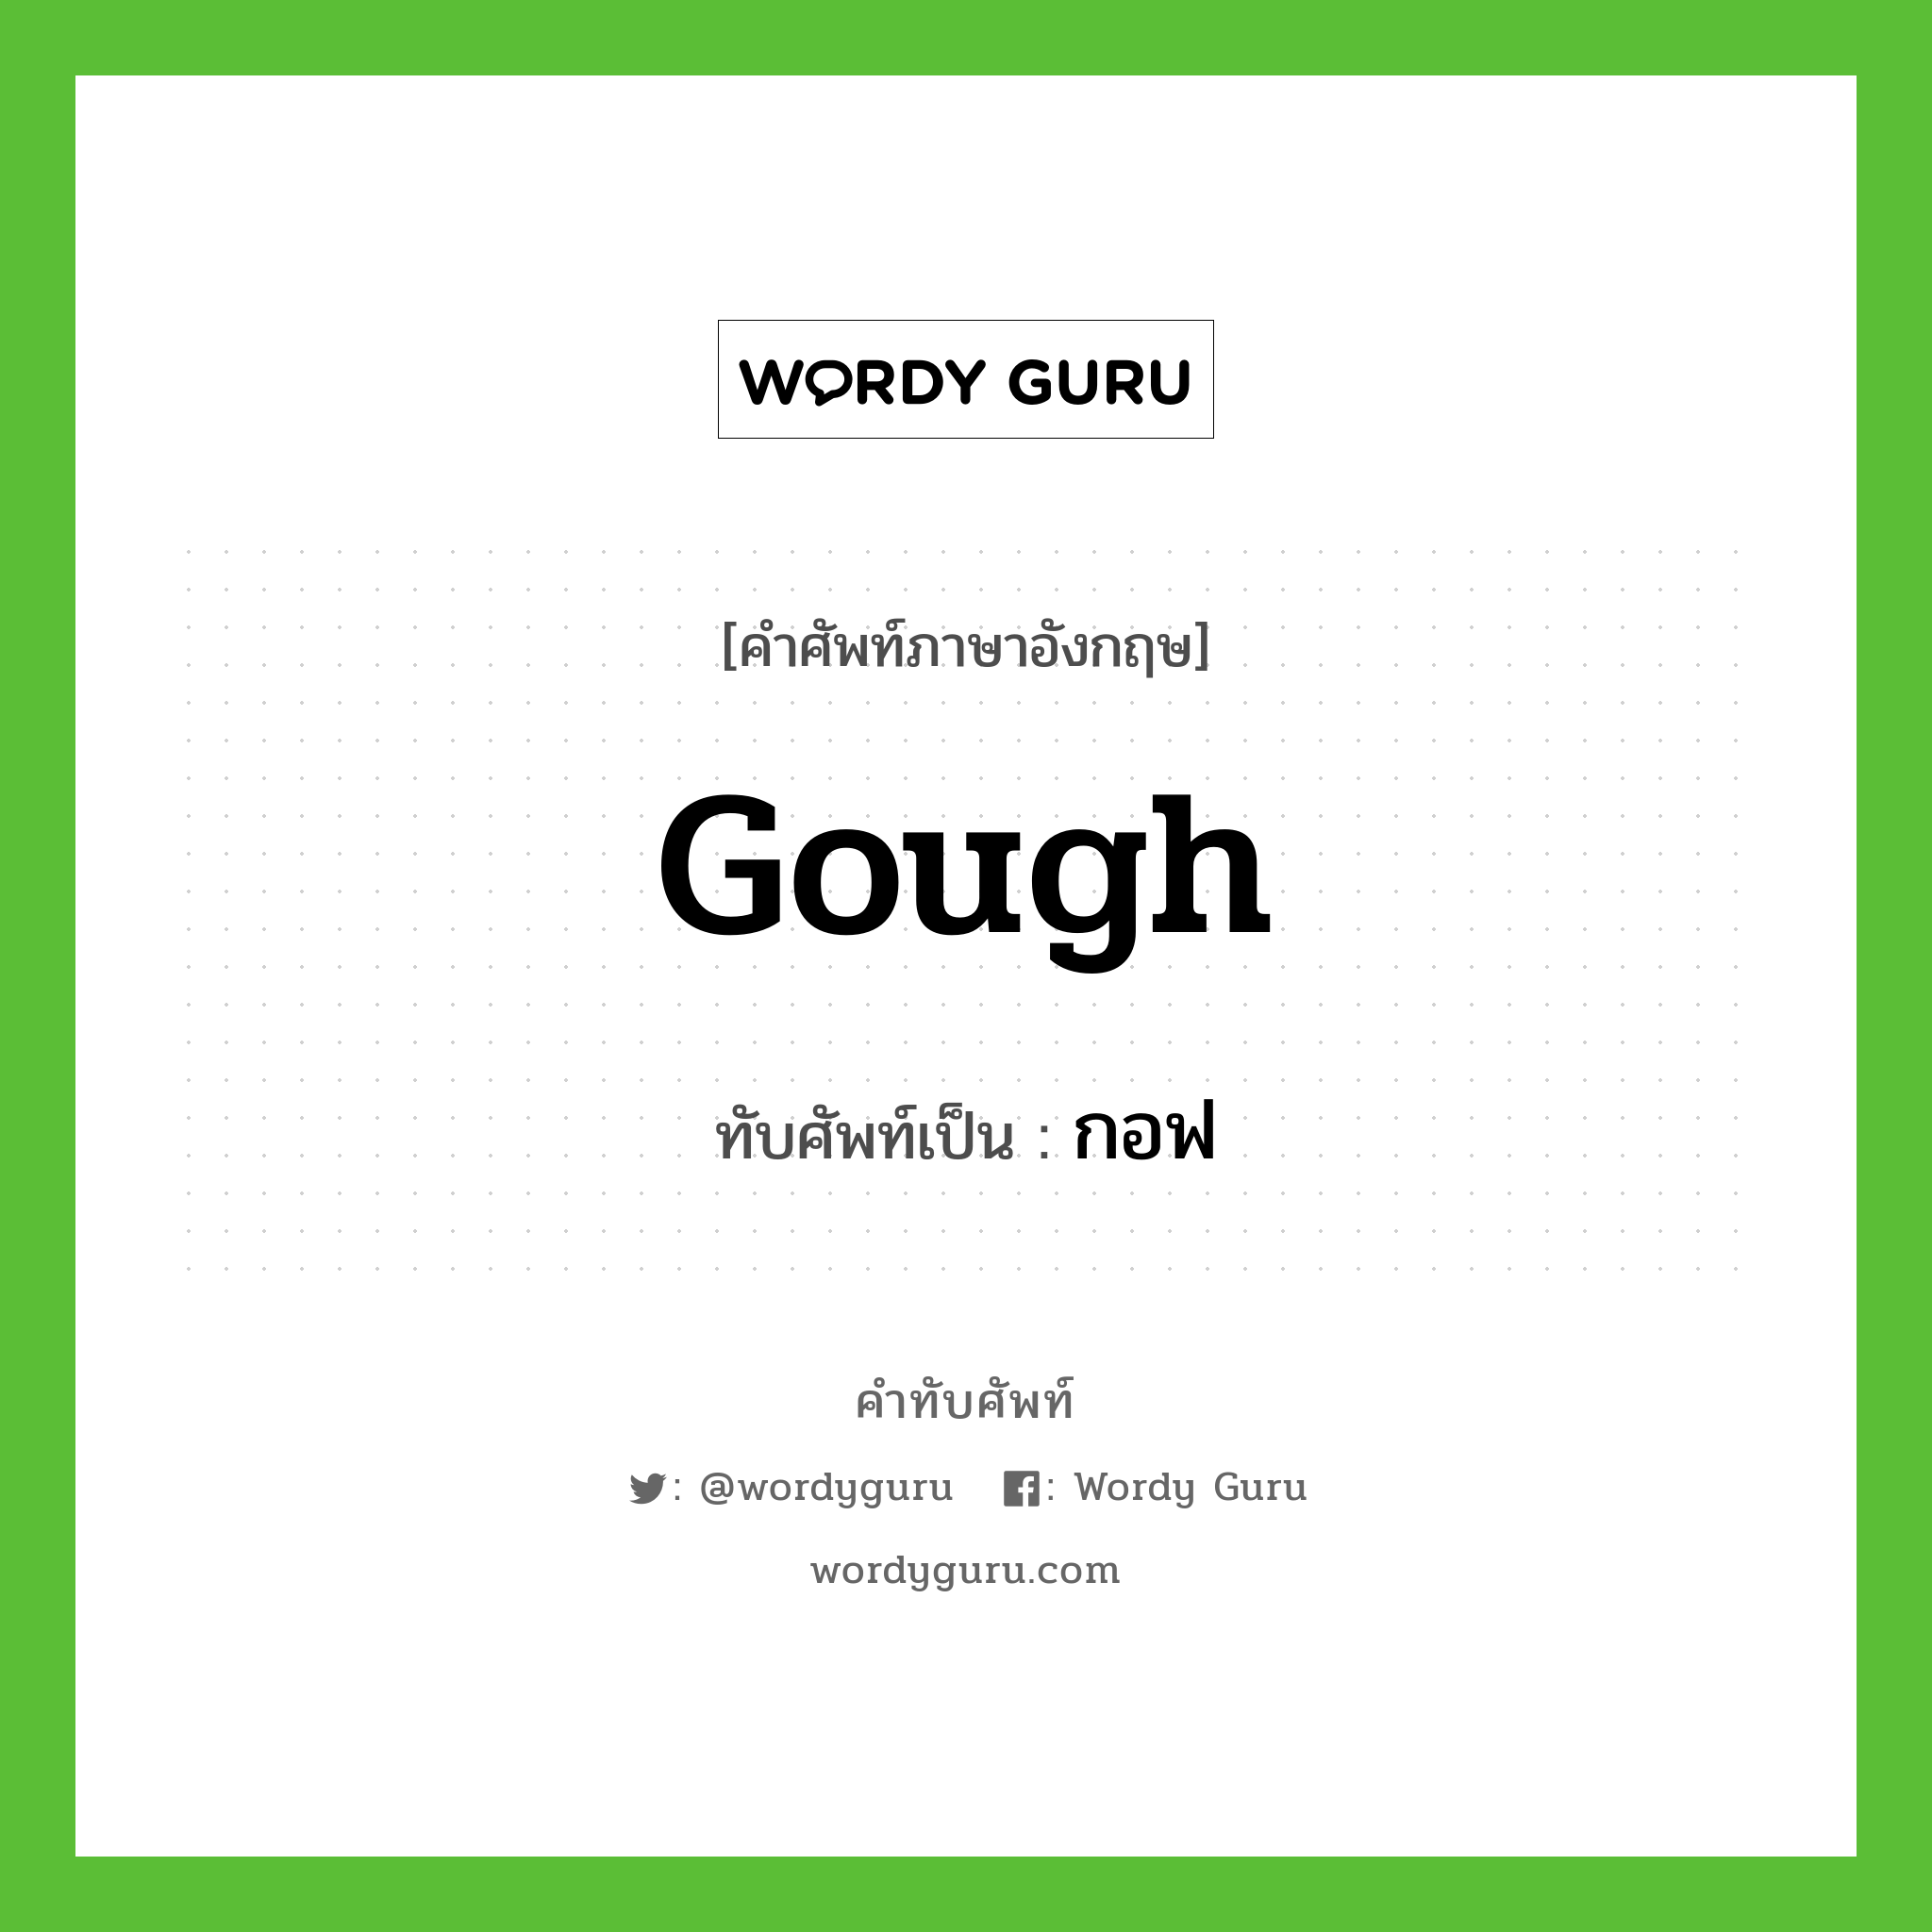 Gough เขียนเป็นคำไทยว่าอะไร?, คำศัพท์ภาษาอังกฤษ Gough ทับศัพท์เป็น กอฟ